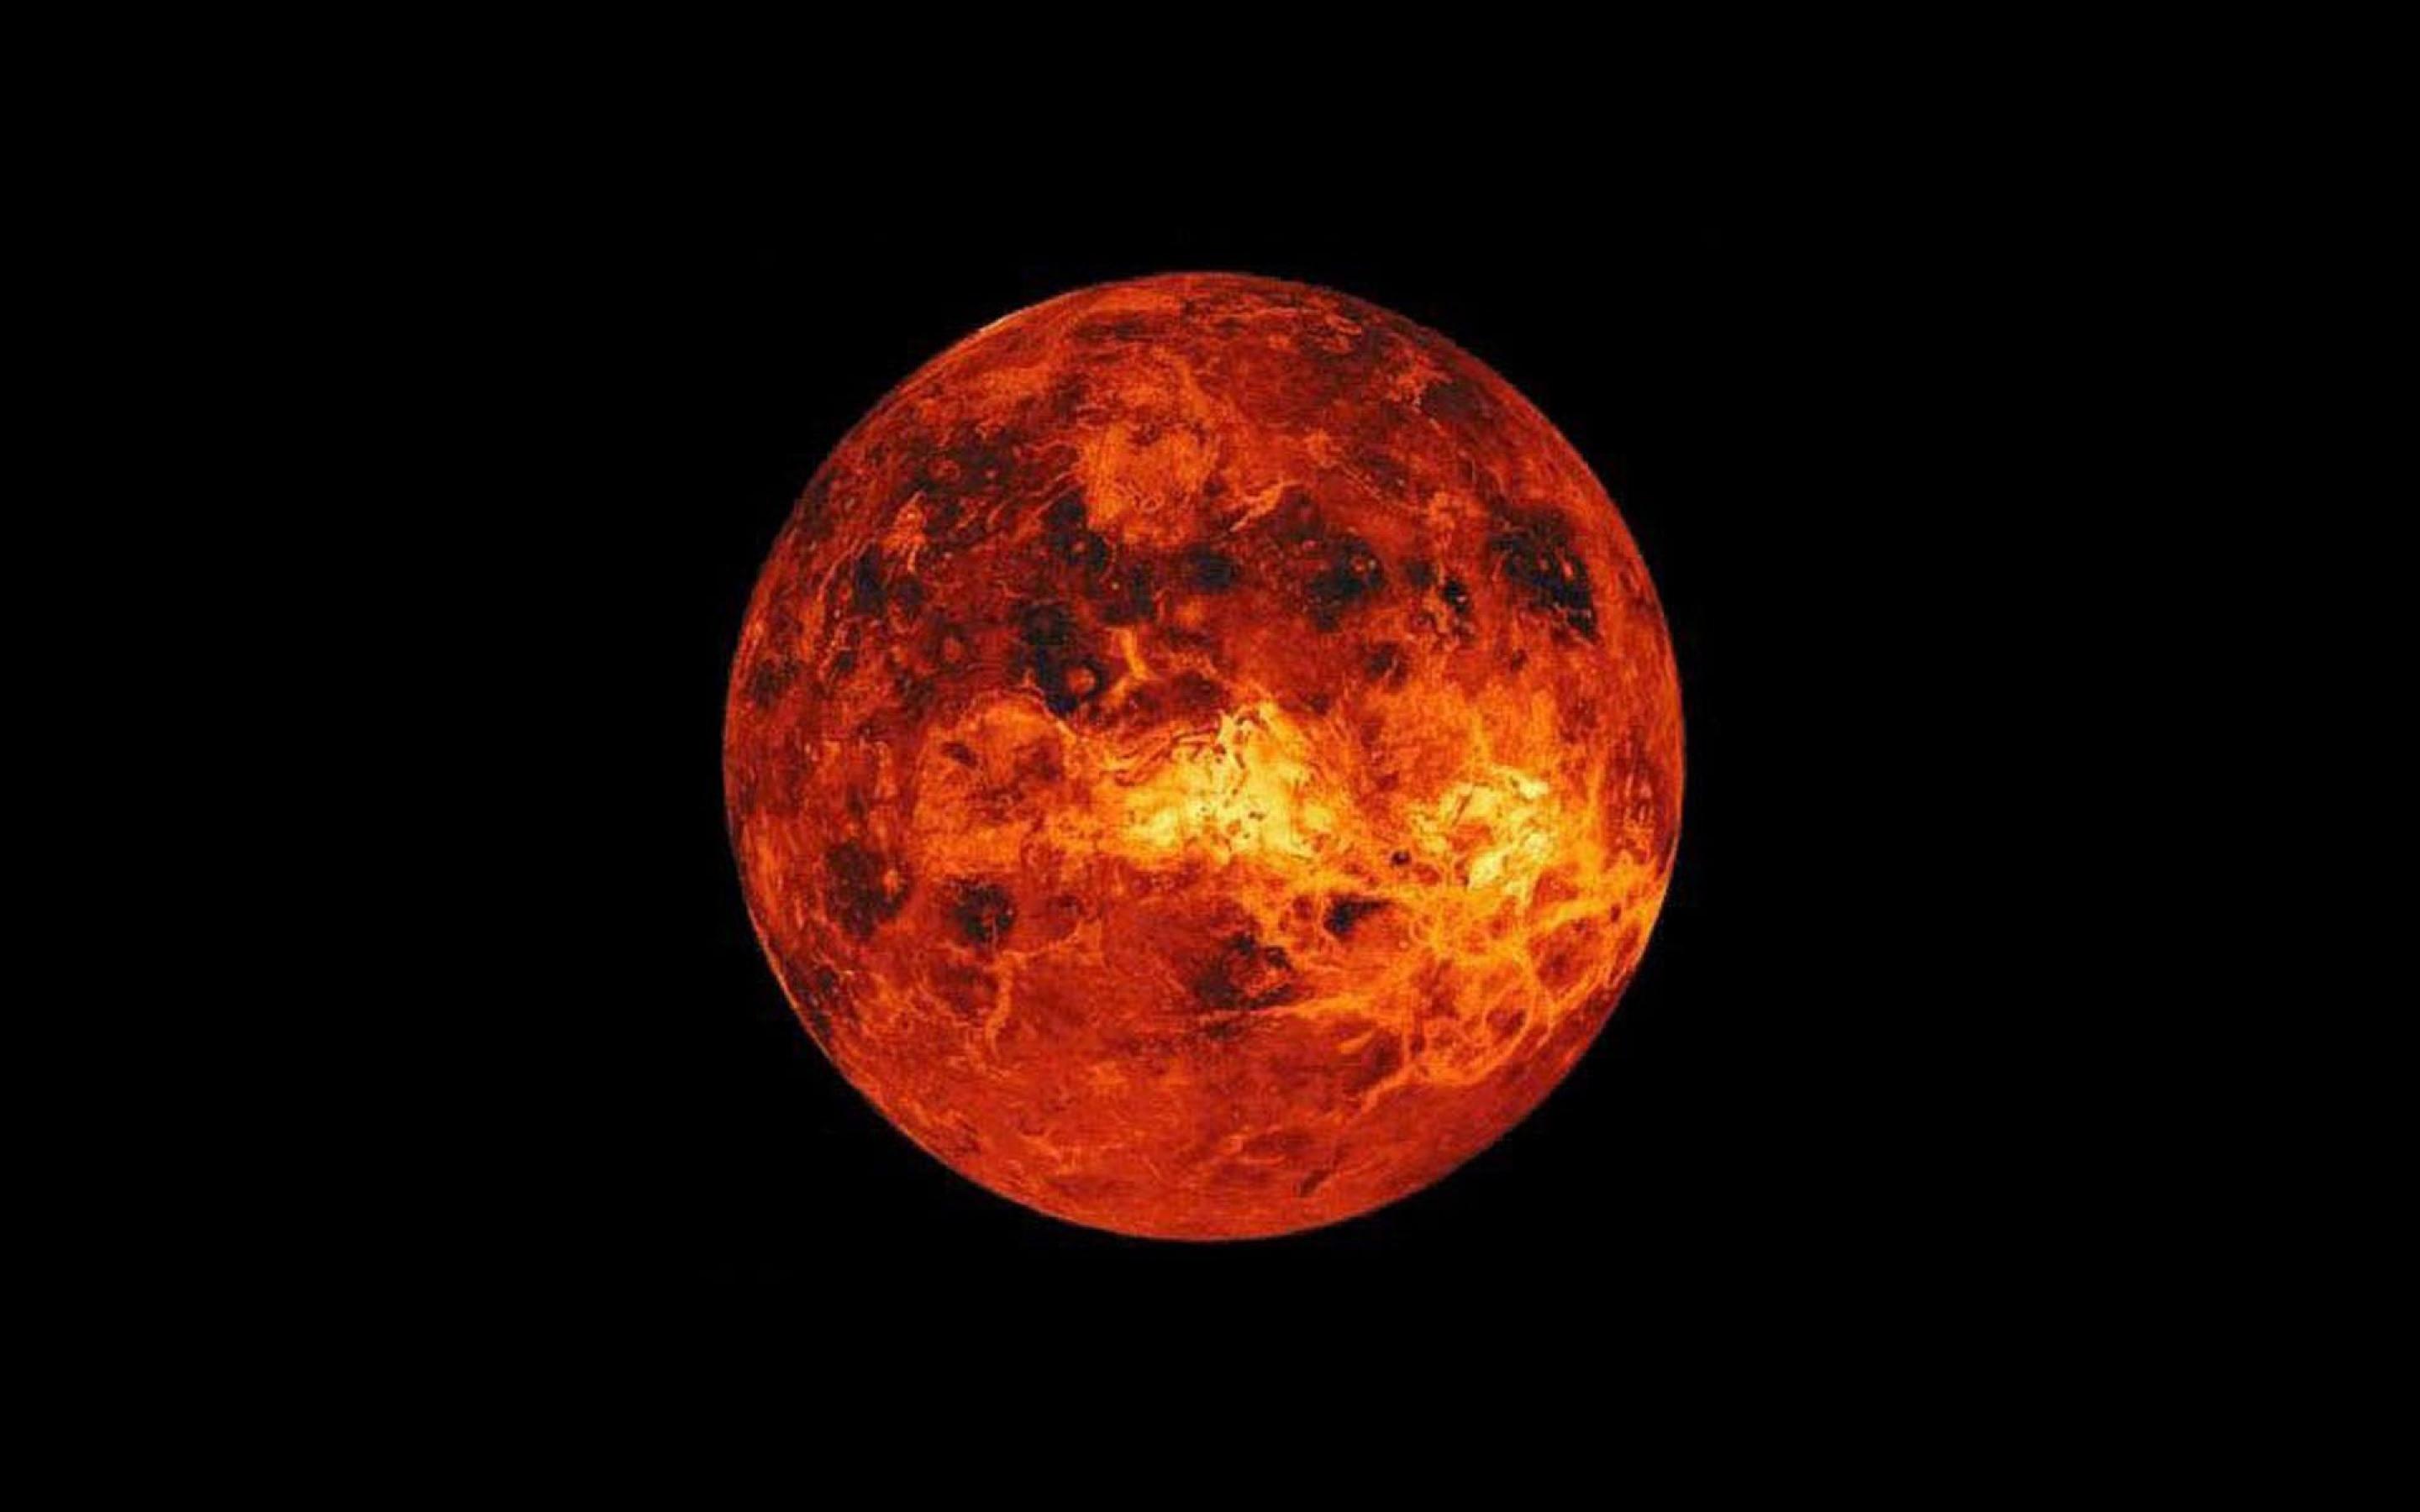 نمای شاهکار از سیاره Venus با زمینه مشکی برای ادیت